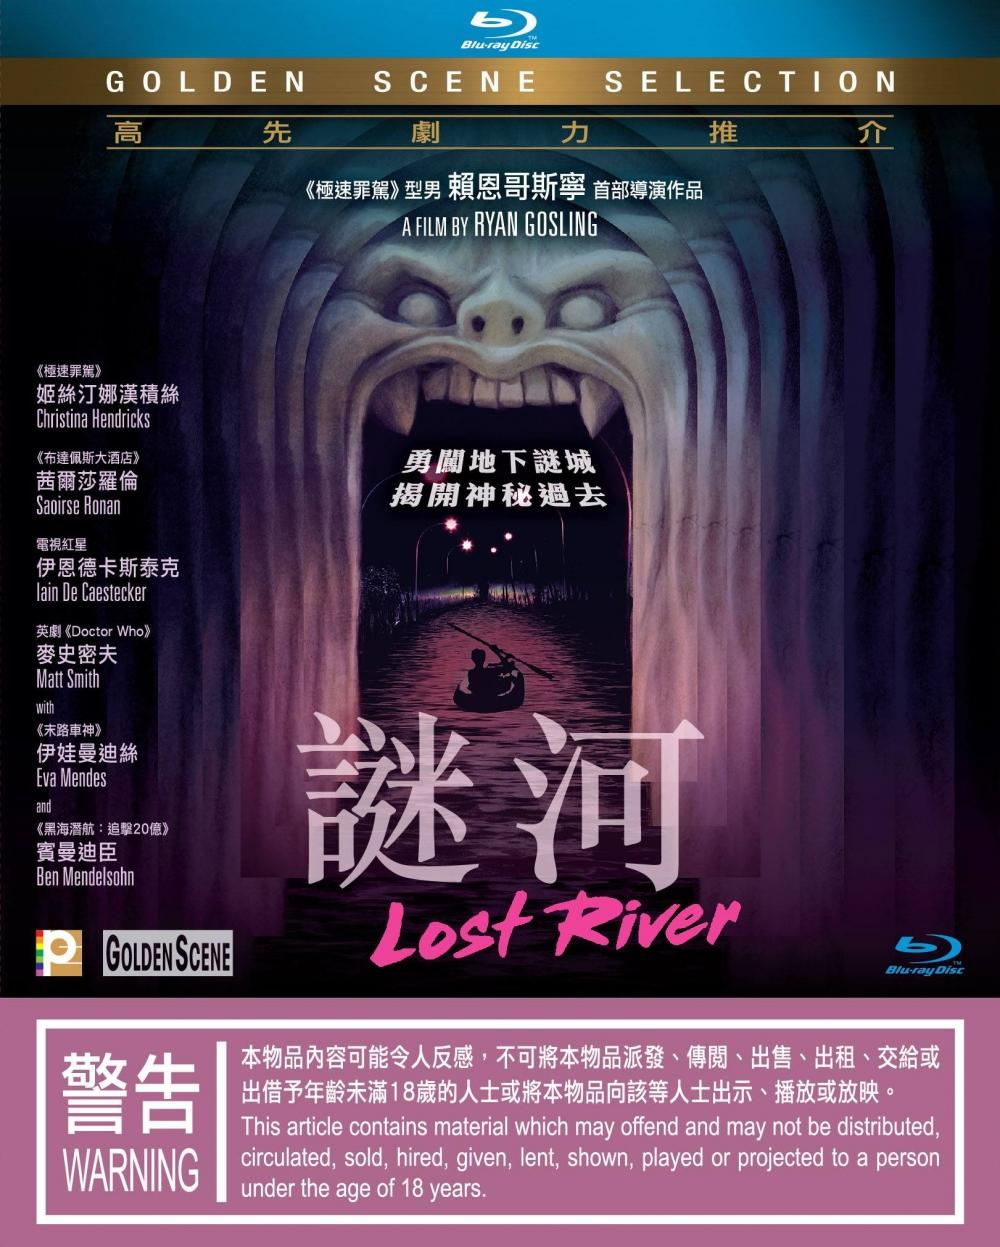 香港版 2016 Blu-ray 封面